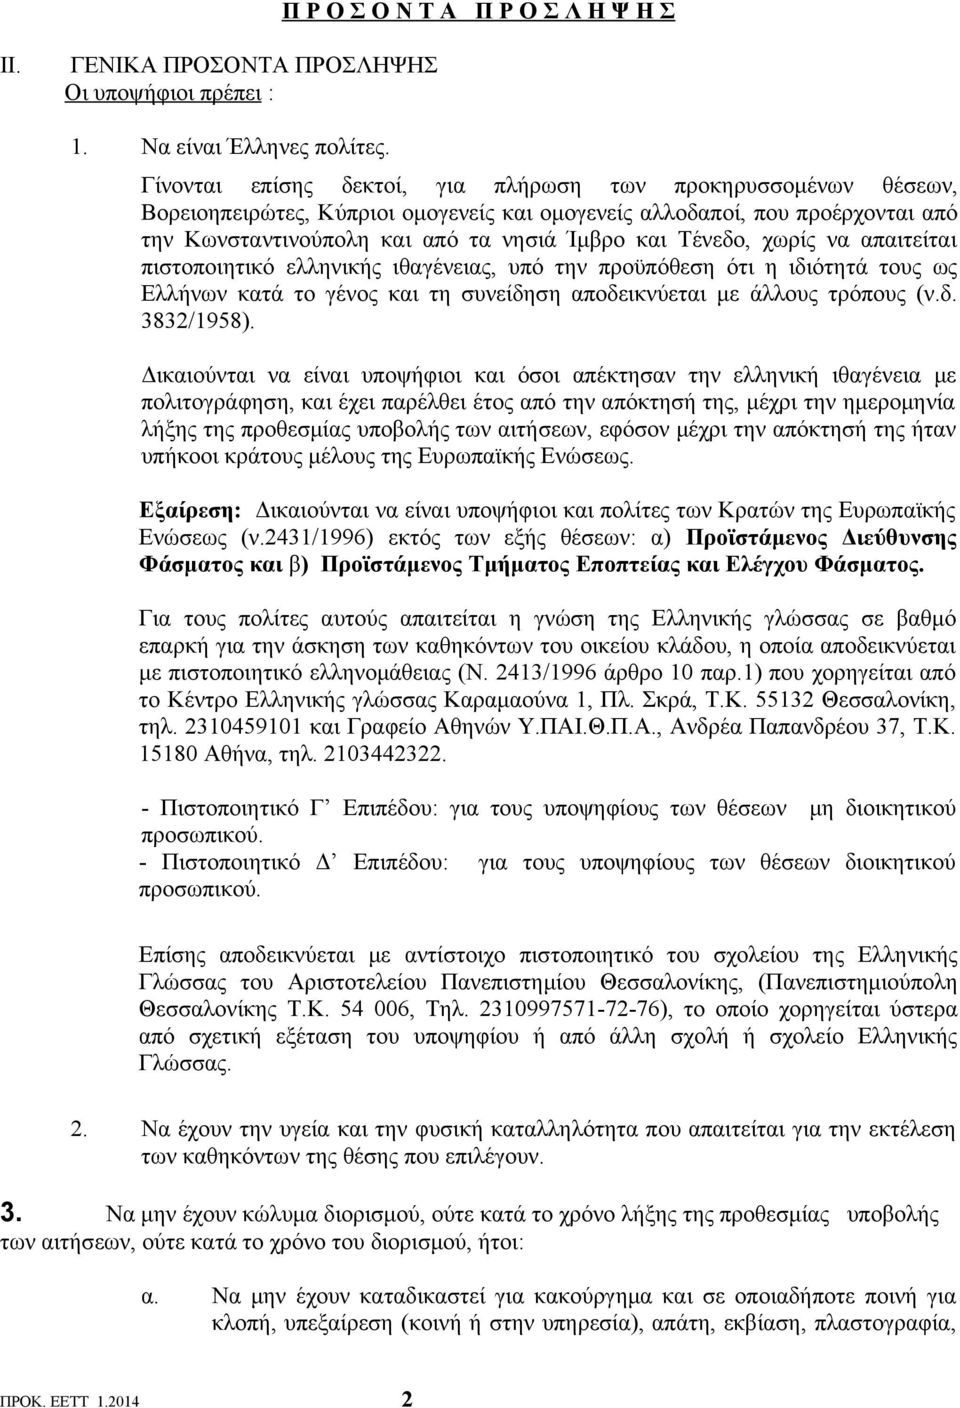 χωρίς να απαιτείται πιστοποιητικό ελληνικής ιθαγένειας, υπό την προϋπόθεση ότι η ιδιότητά τους ως Ελλήνων κατά το γένος και τη συνείδηση αποδεικνύεται με άλλους τρόπους (ν.δ. 3832/1958).